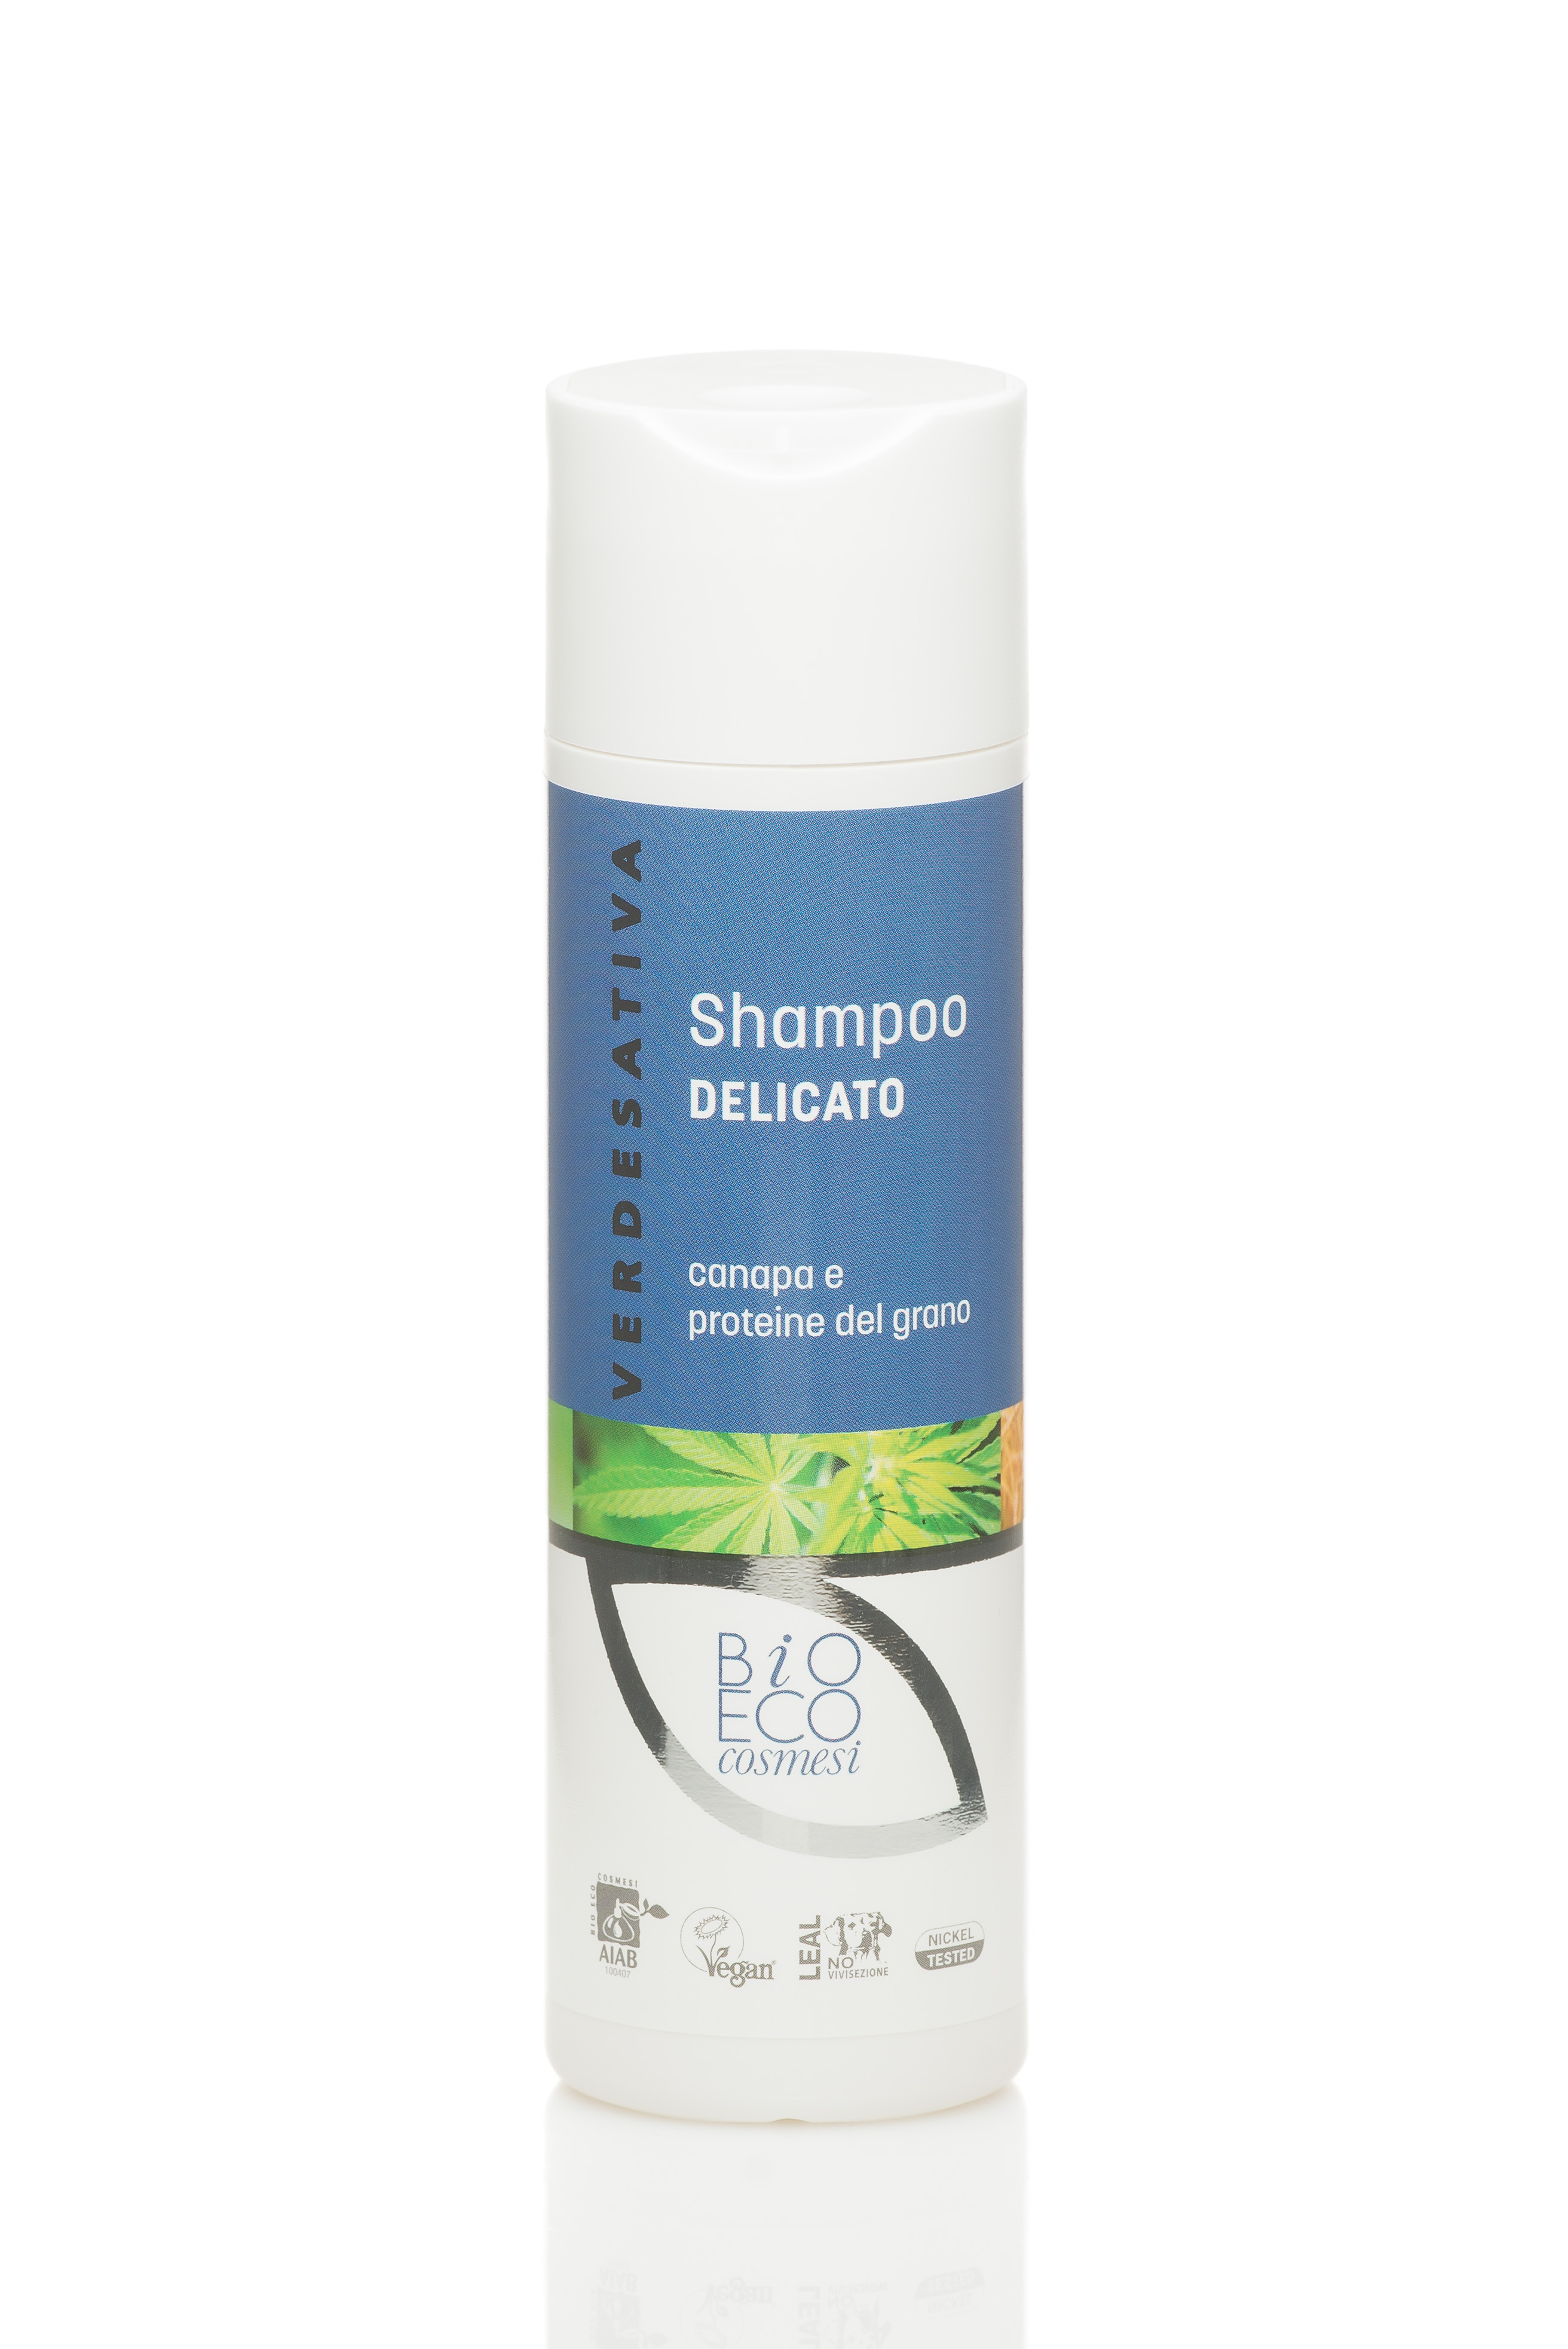 Shampoo Delicato canapa e proteine del grano 100% naturale ecologico e bio degradabile - 200ml